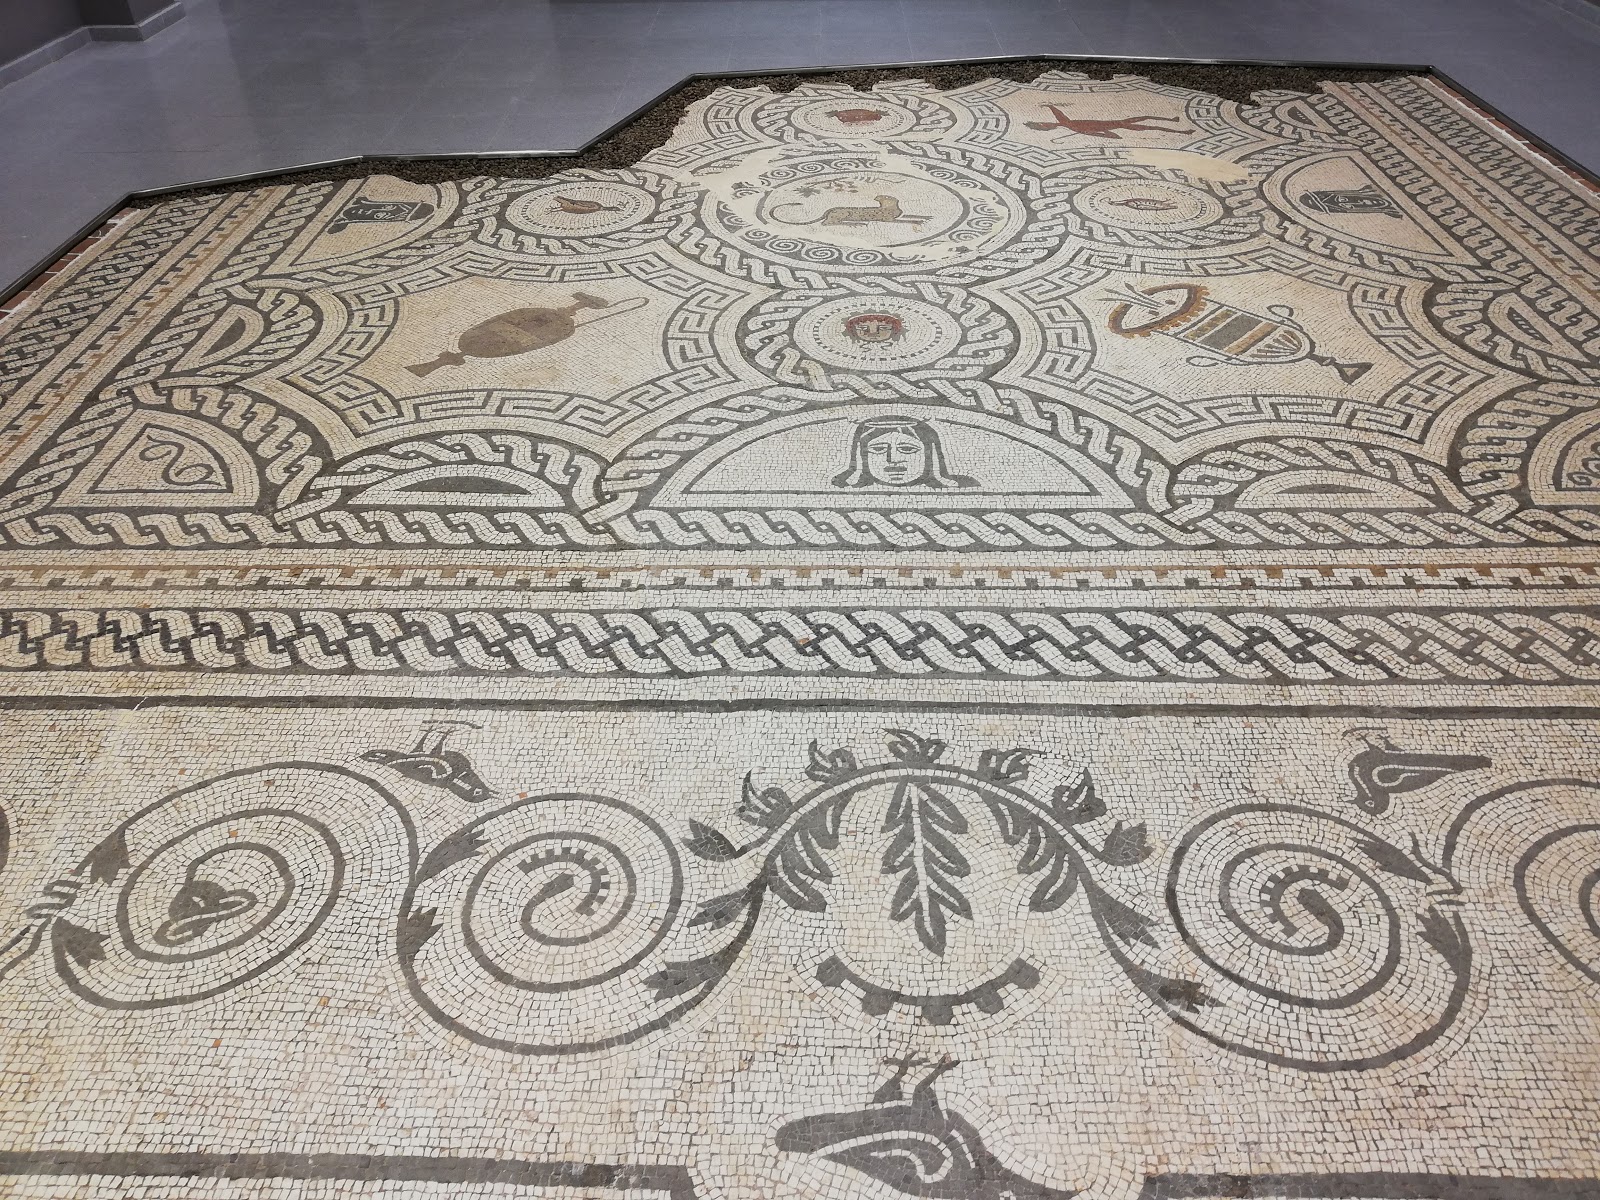 Mosaico romano del siglo III hallado en Ciavieja expuesto en el auditorio de El Ejido. Fuente: patrimonioalmeriensepuebloapueblo.blogspot.com